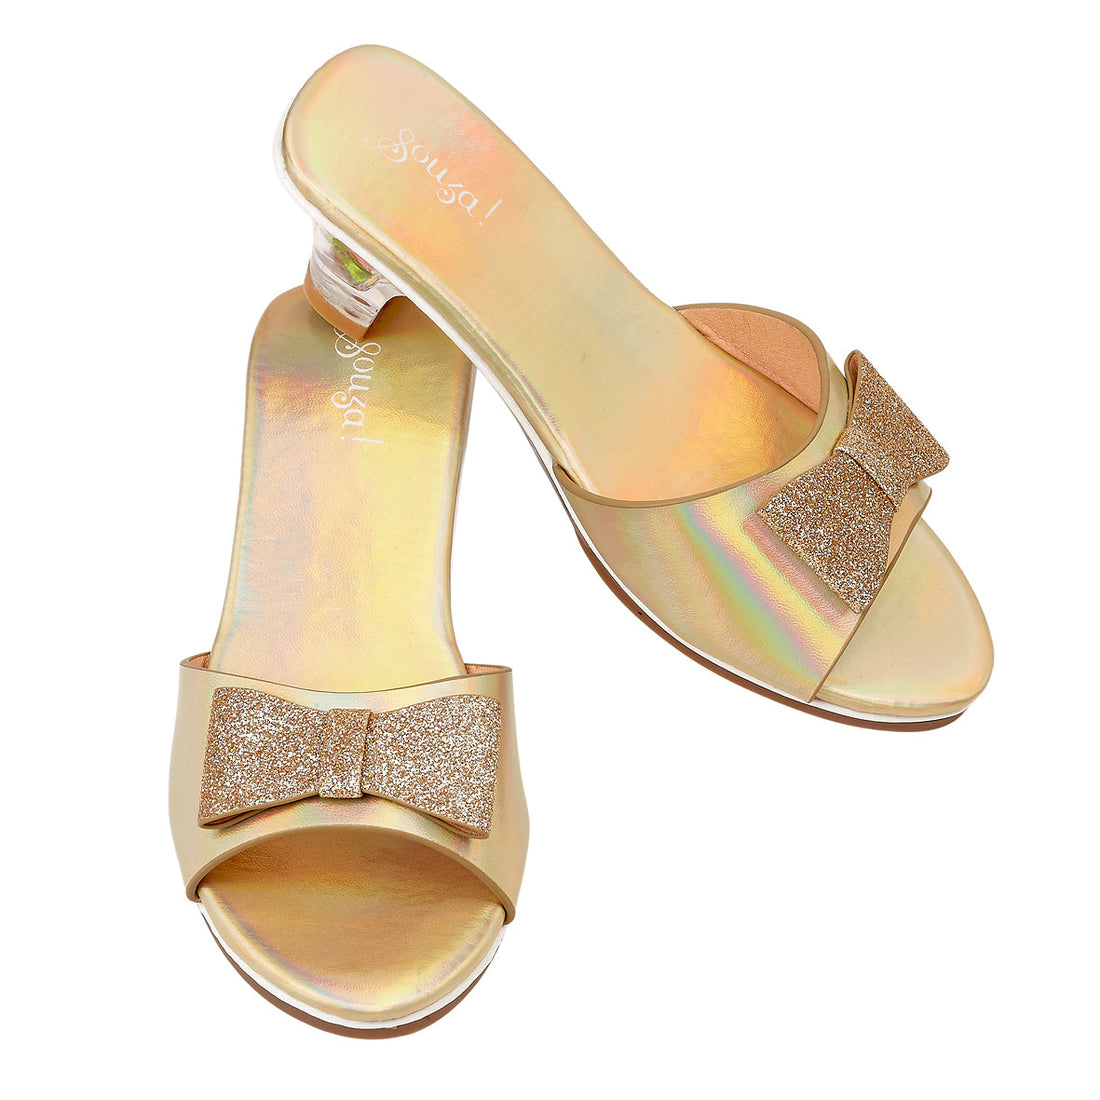 souza-slipper-h-heel-emmeline-gold-metallic-souz-106433-